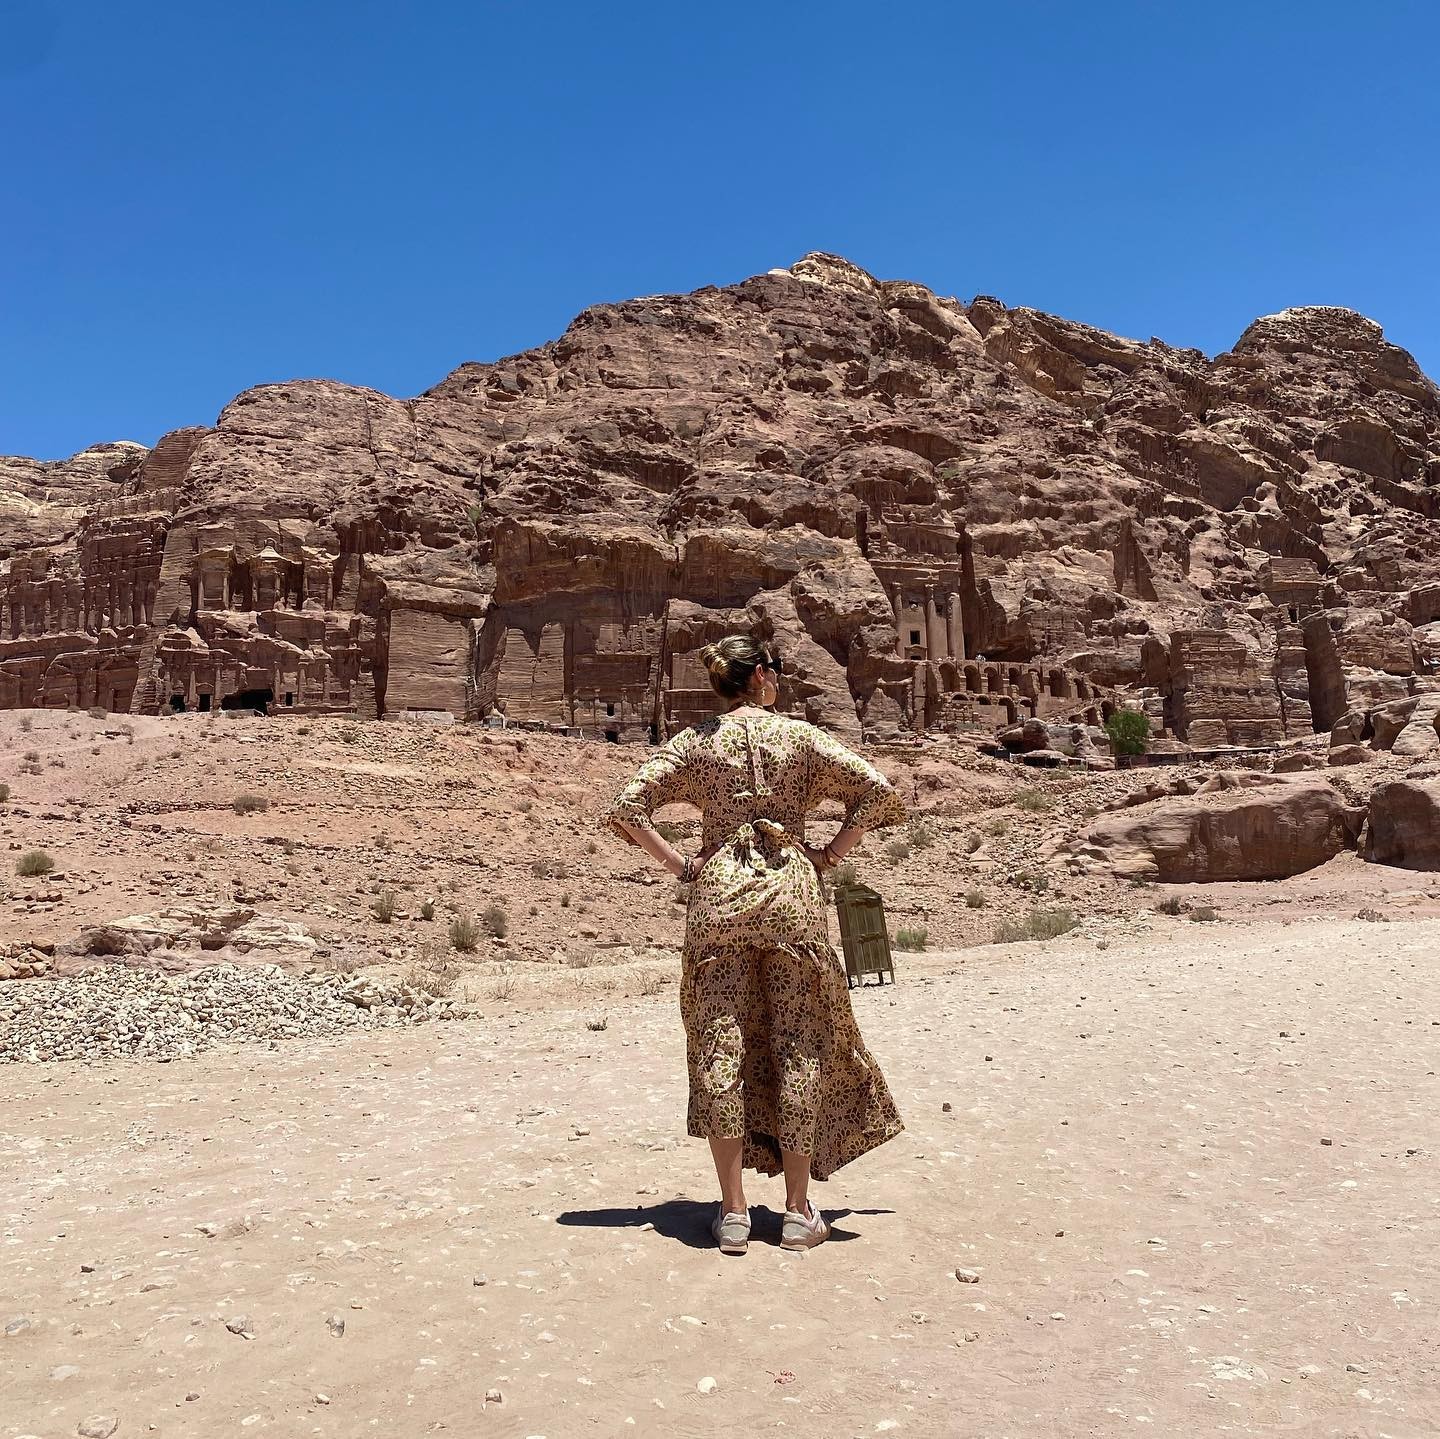 Luana Piovani posa em pontos turísticos em Petra, na Jordânia (Foto: Reprodução / Instagram)